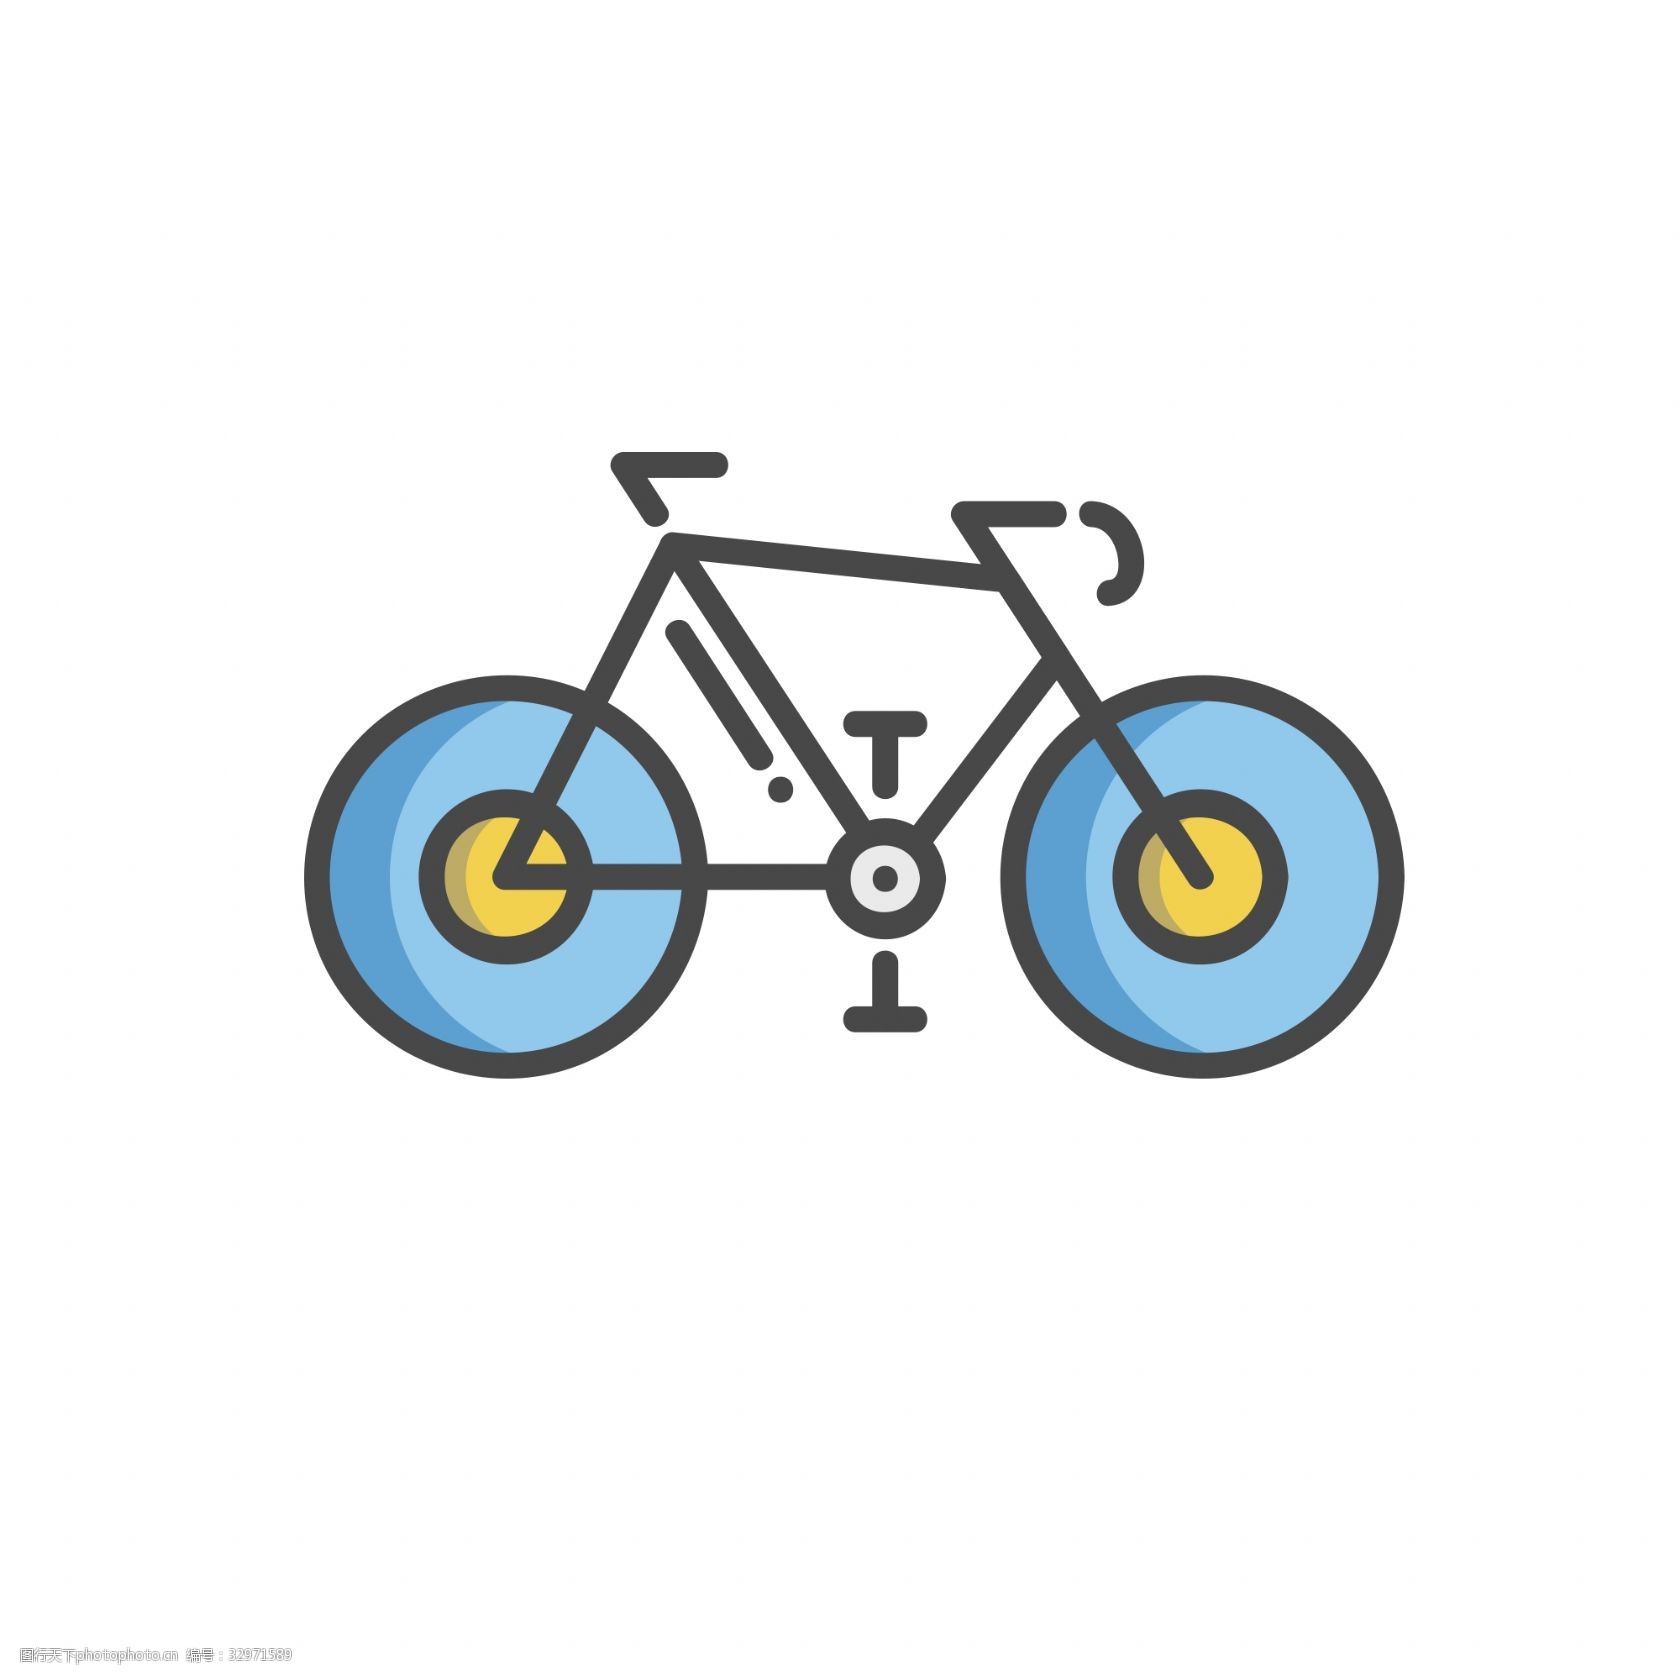 关键词:卡通自行车 单车 自行车 扁平化ui ui图标 手机图标 界面ui